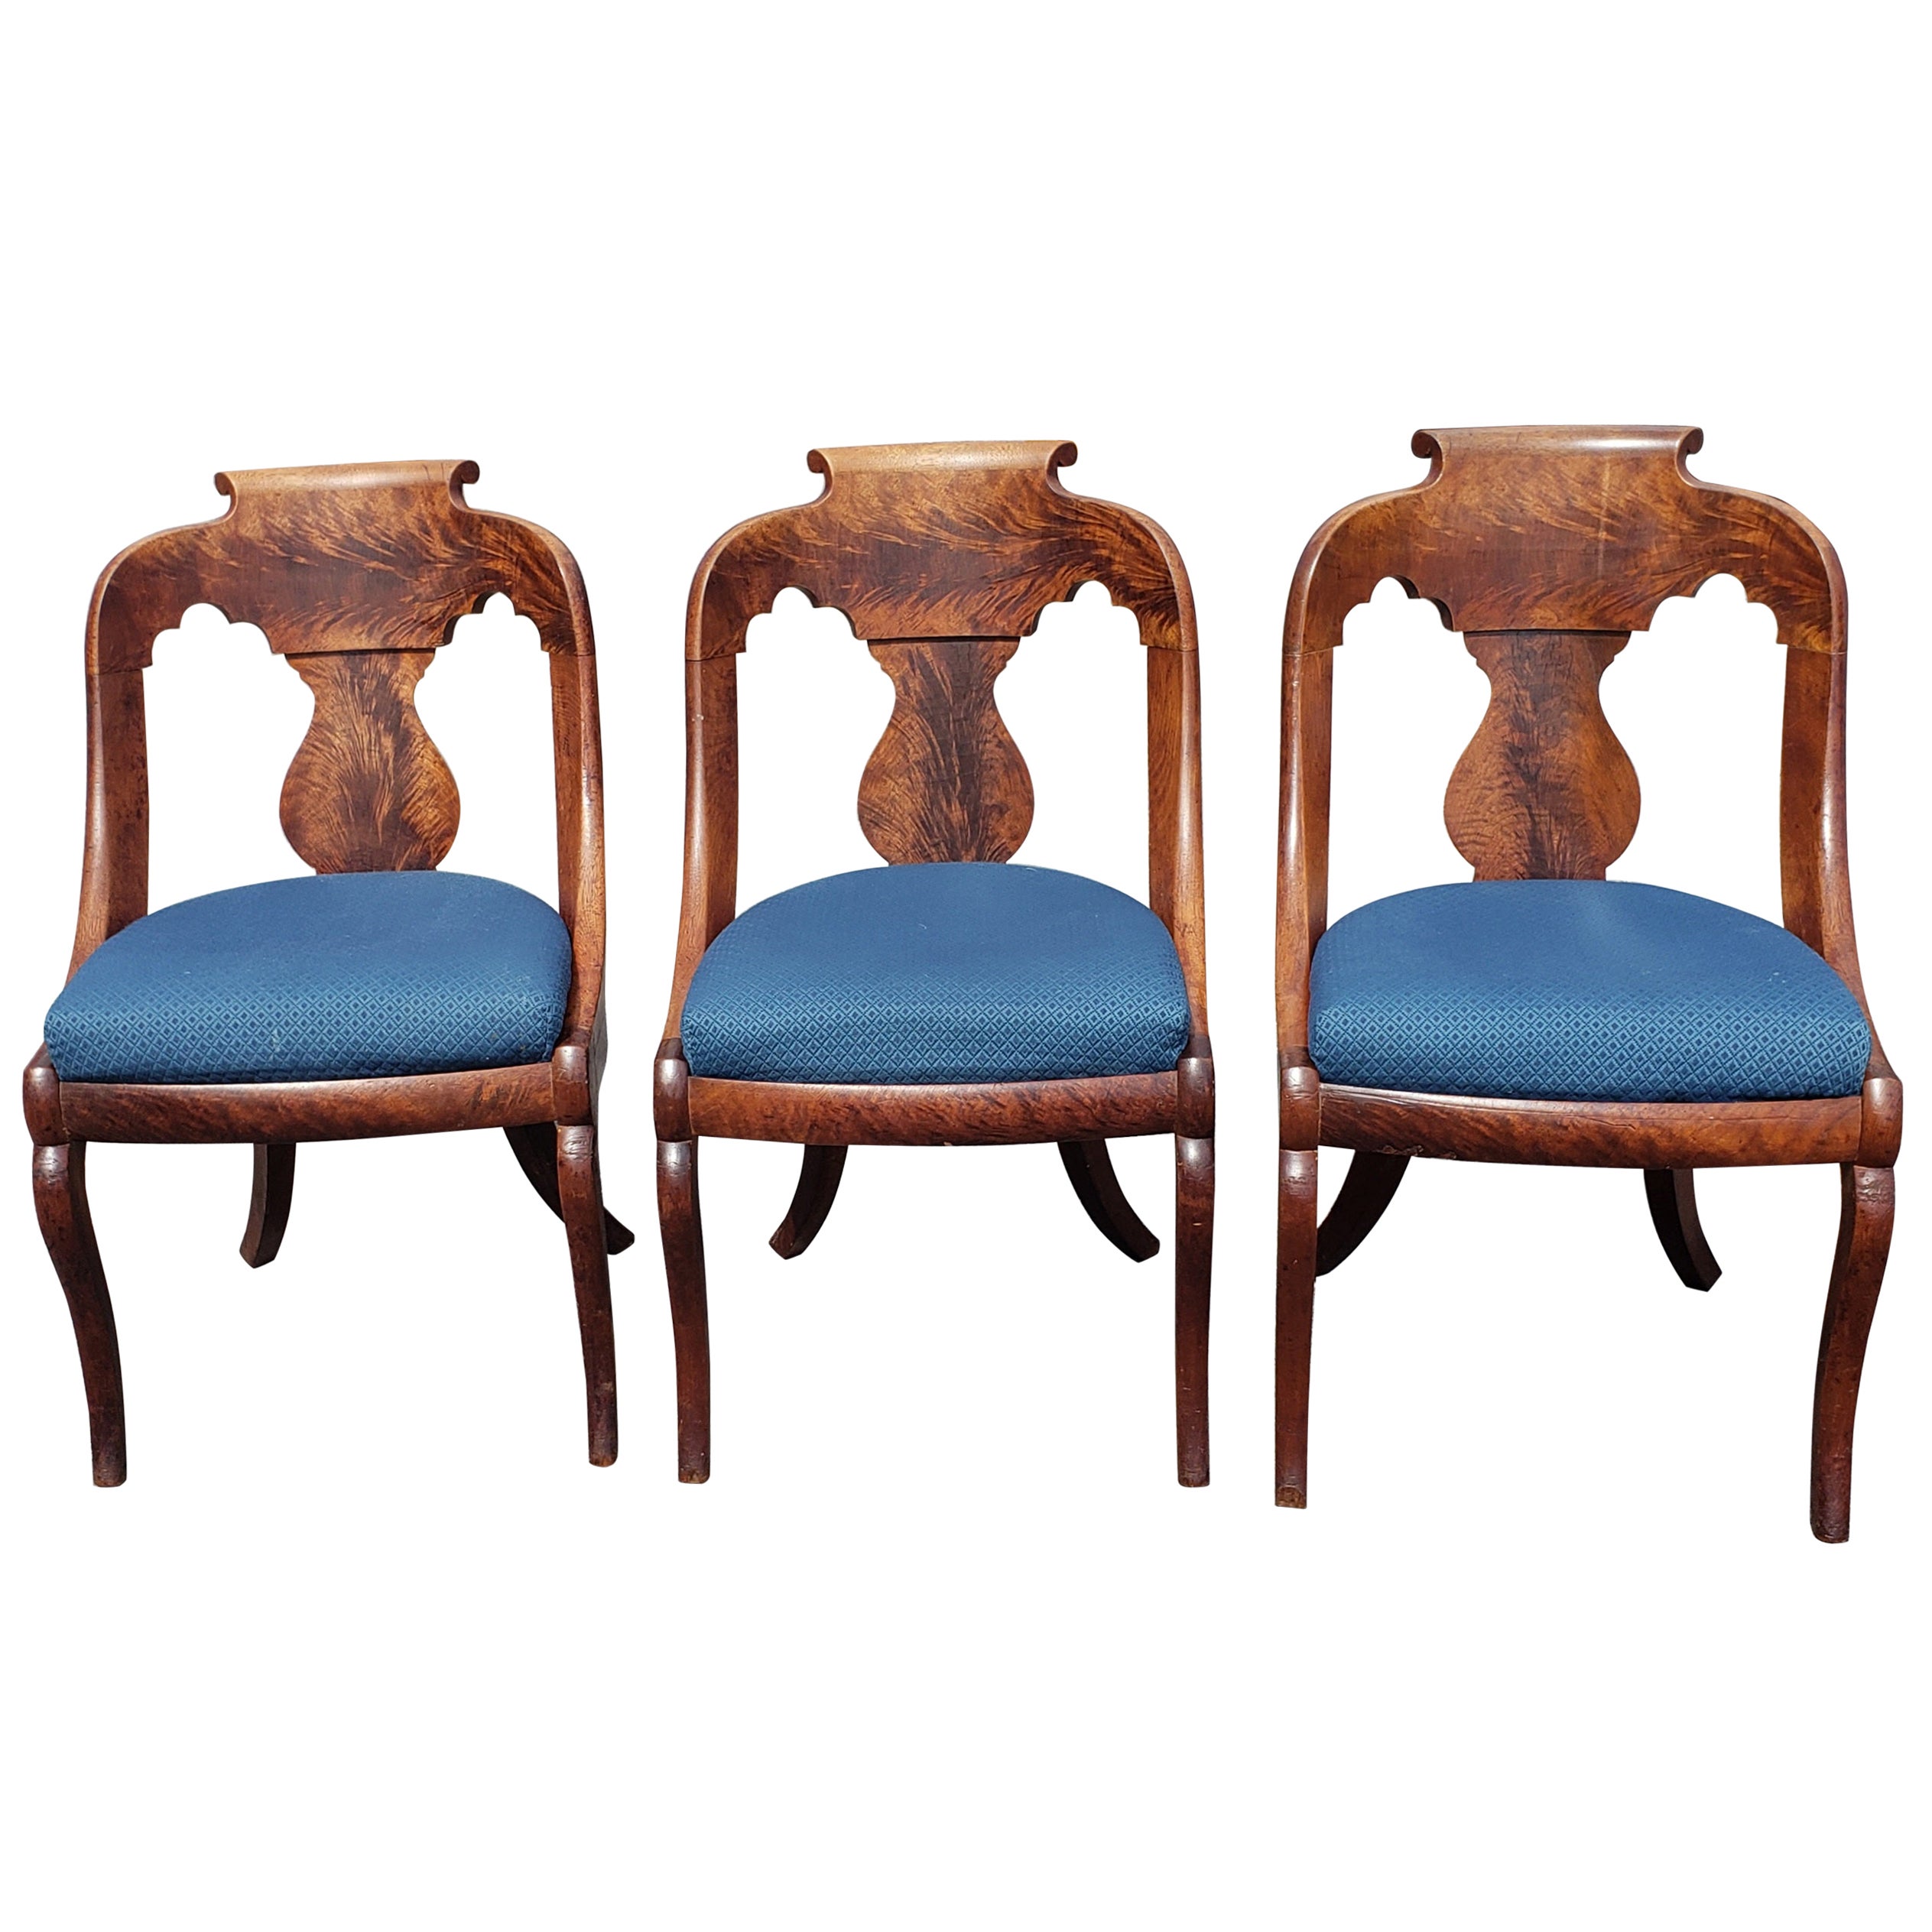 Amerikanische Empire Boston Mahagoni-Grandview-Stühle, ca. 1860er Jahre, 3er-Set